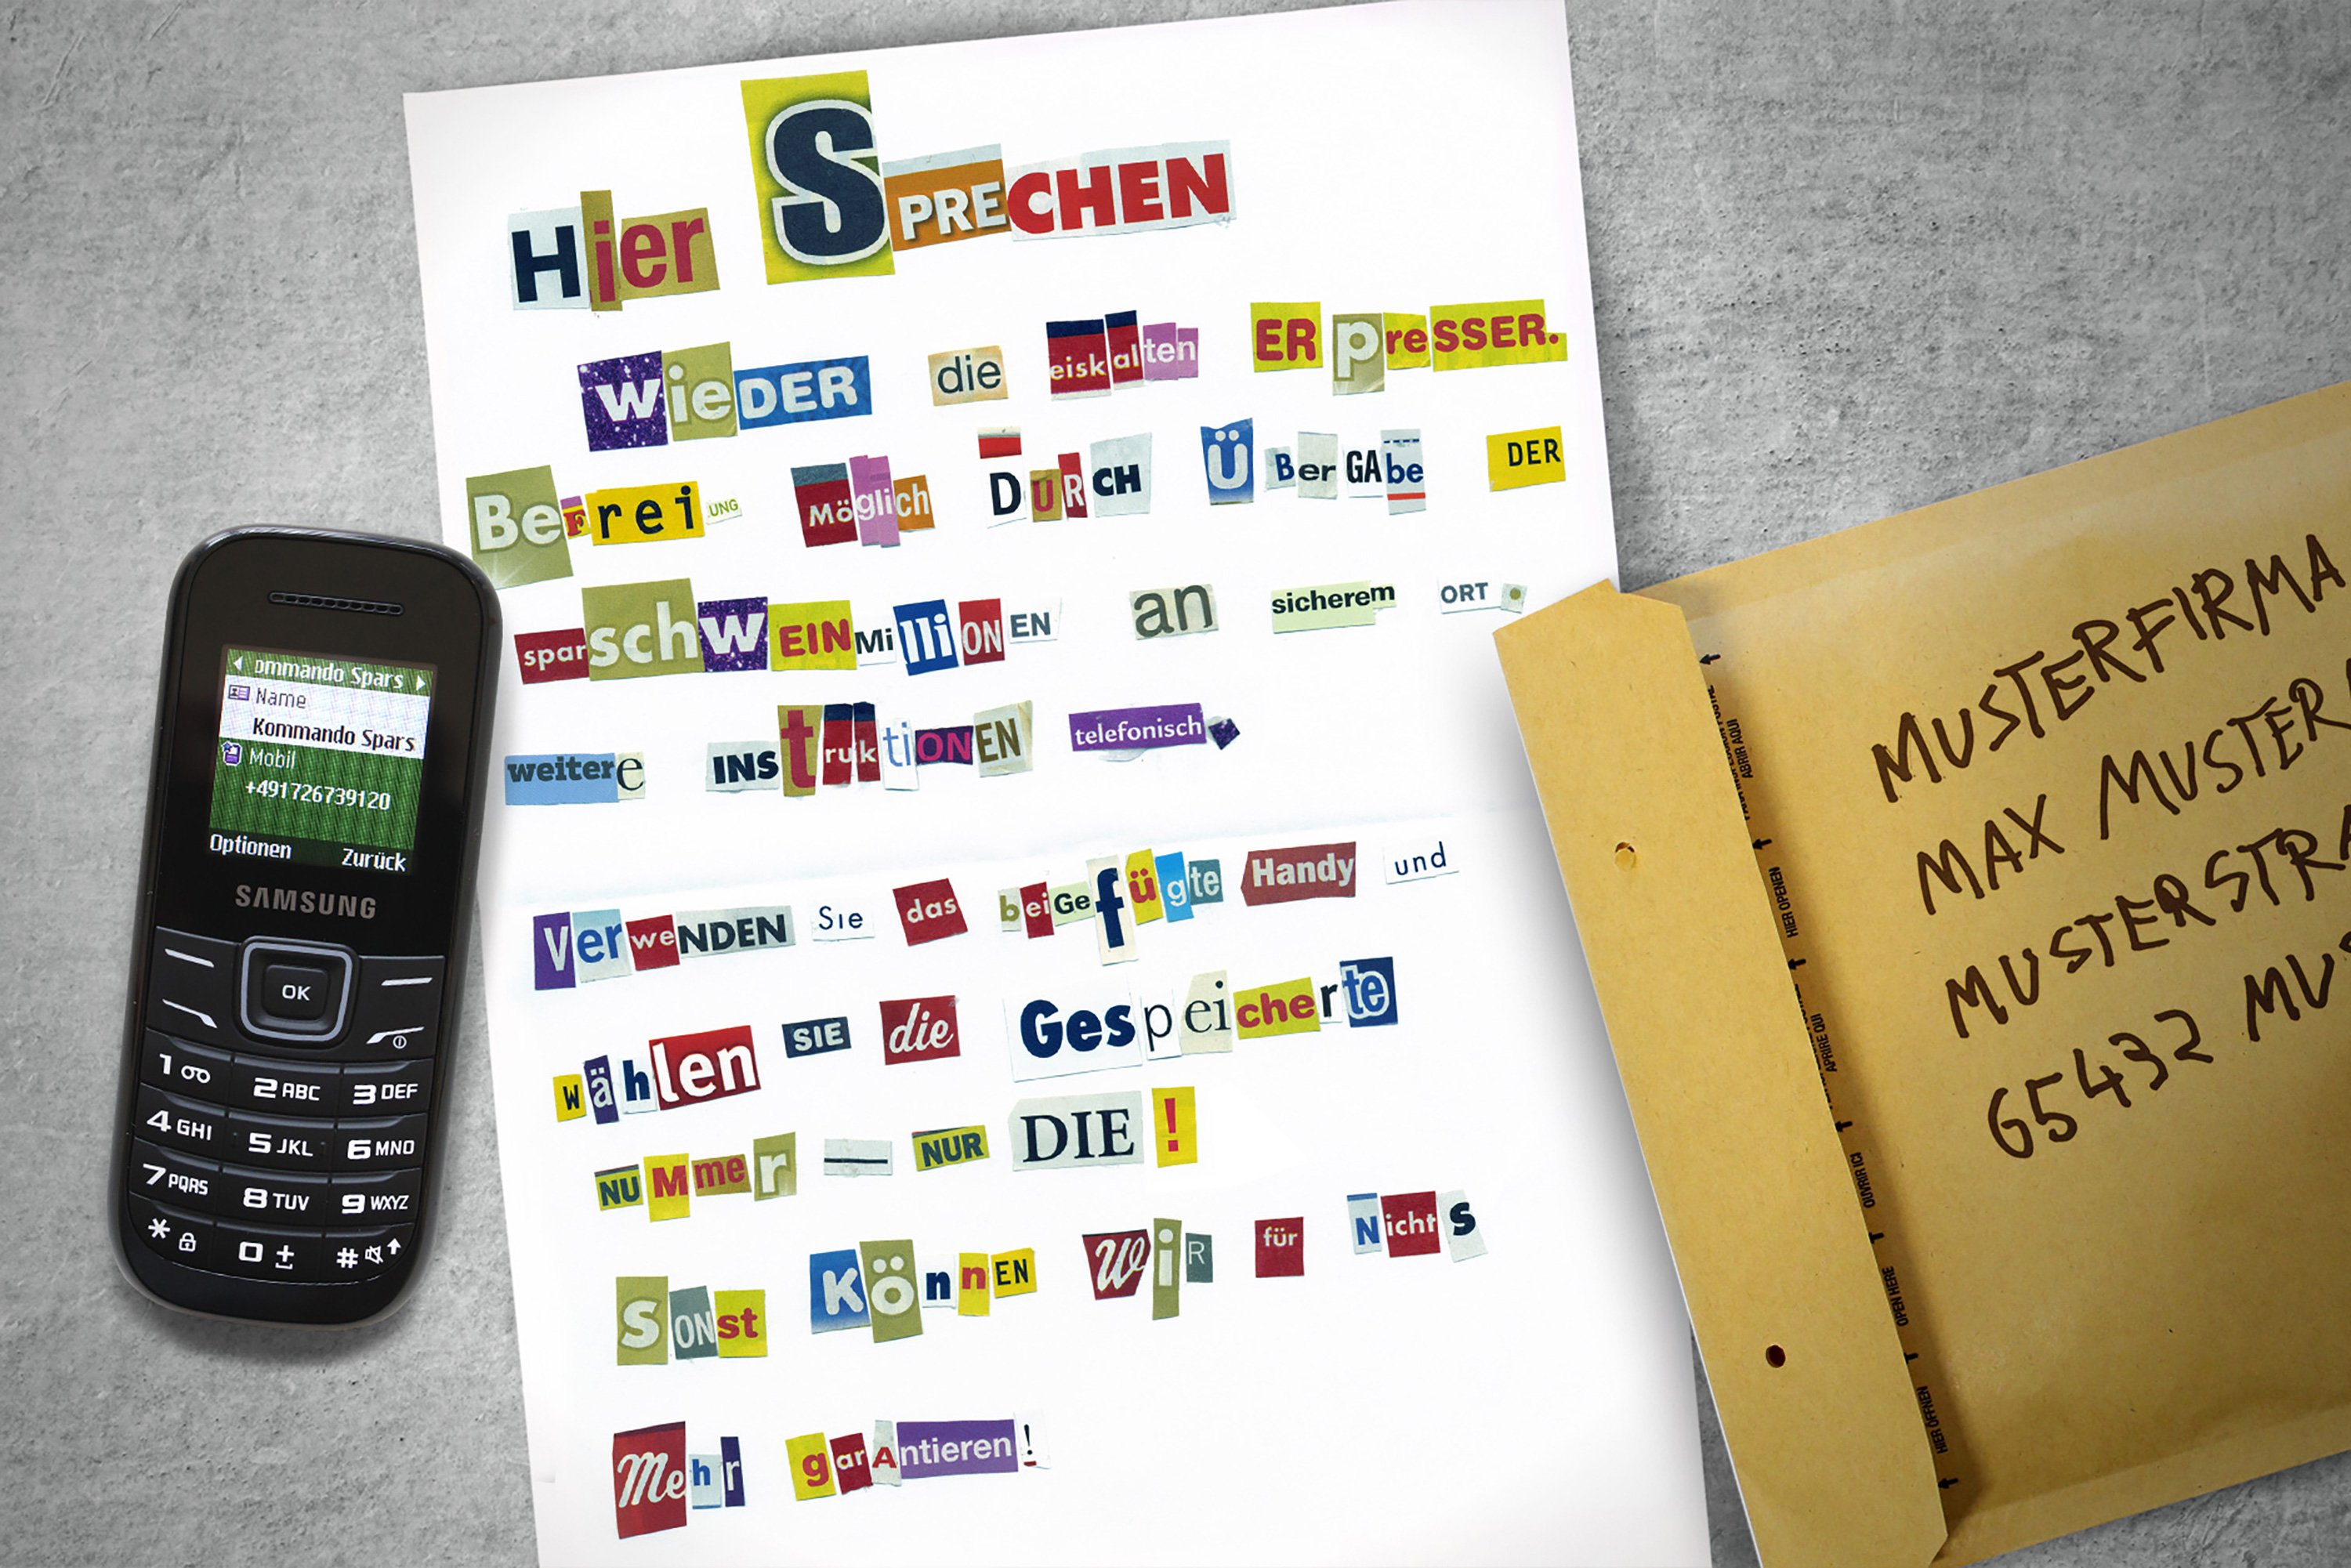 Excite Werbeagentur Kommando Sparschwein Mailing-Bestandteile Brief Mobiltelefon